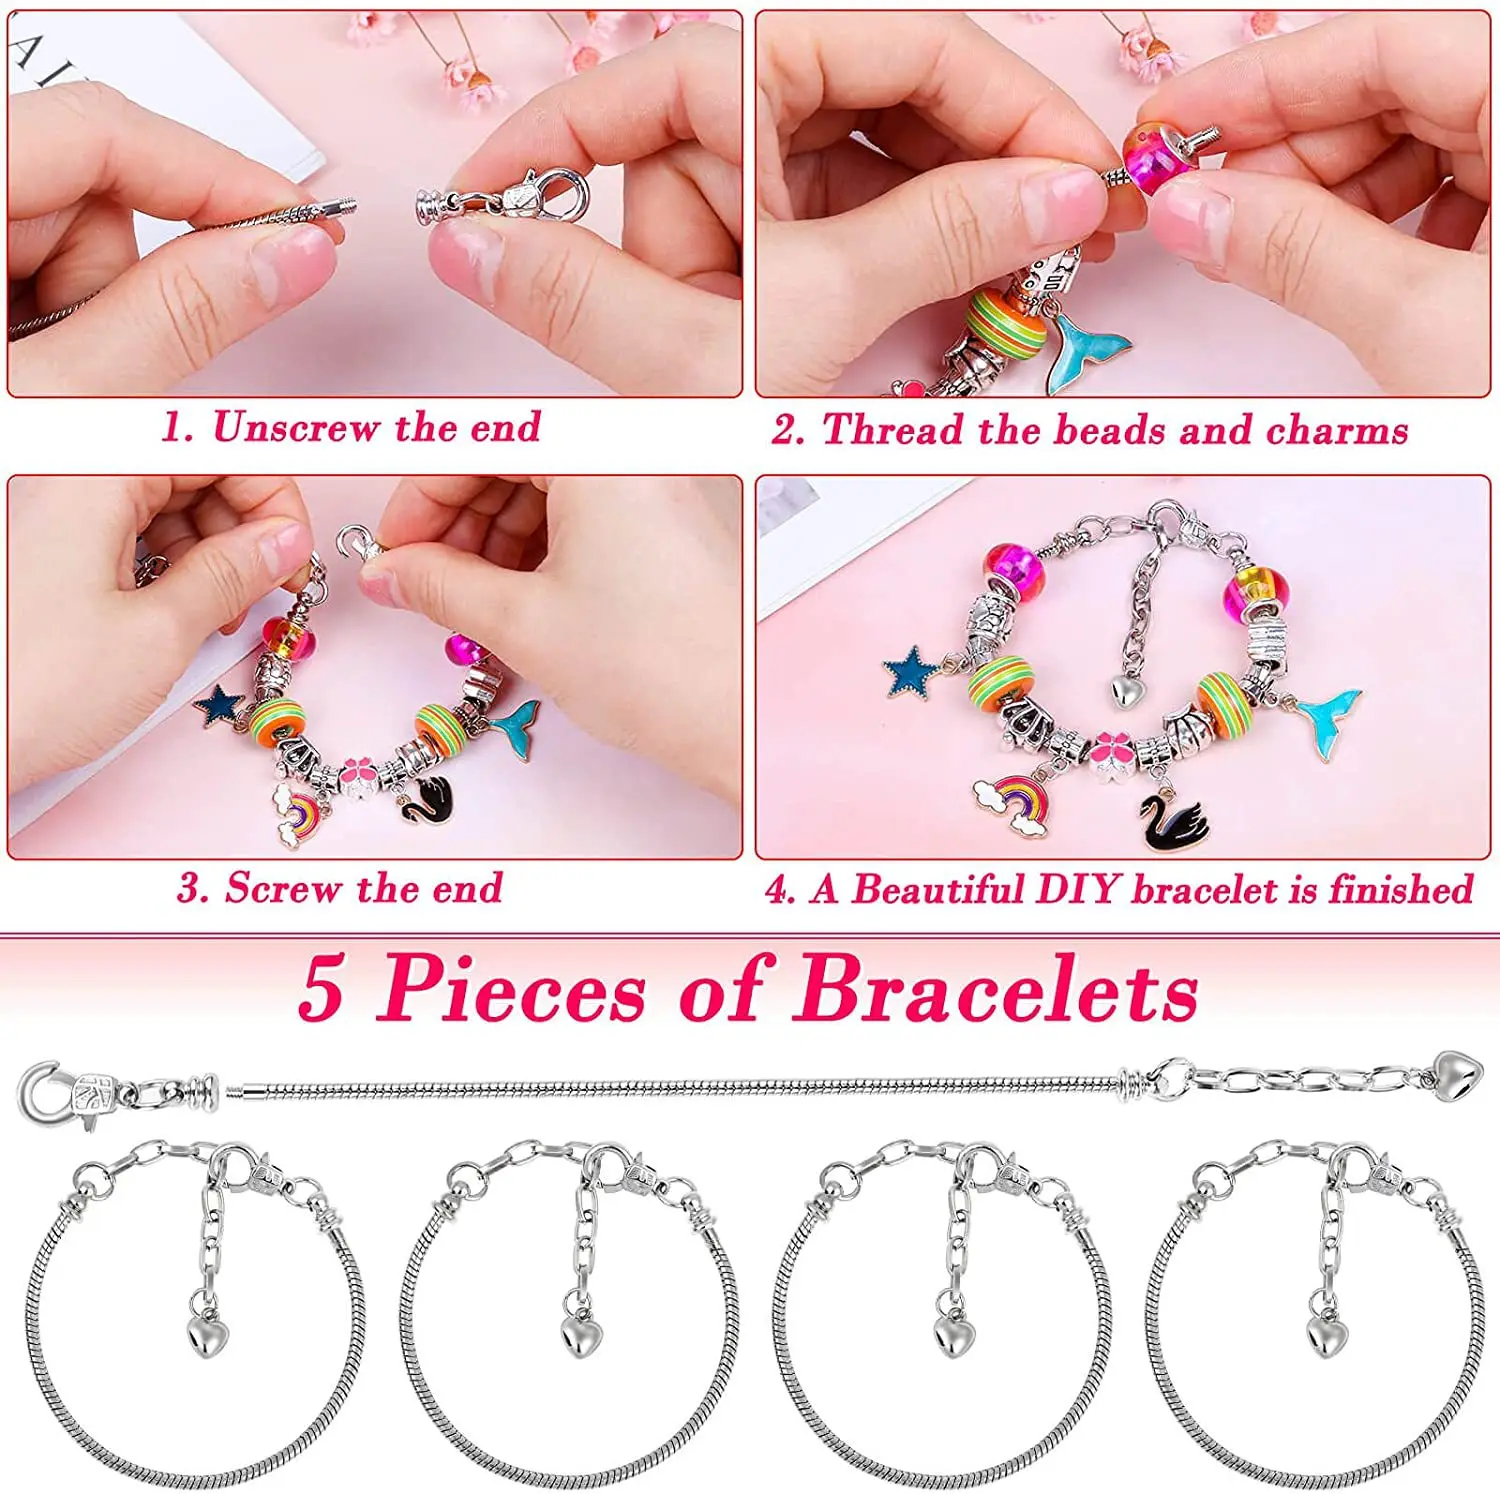 Buy Bracelet Making Kit -60 pieces DIY Jewelry Making Kit for Kids